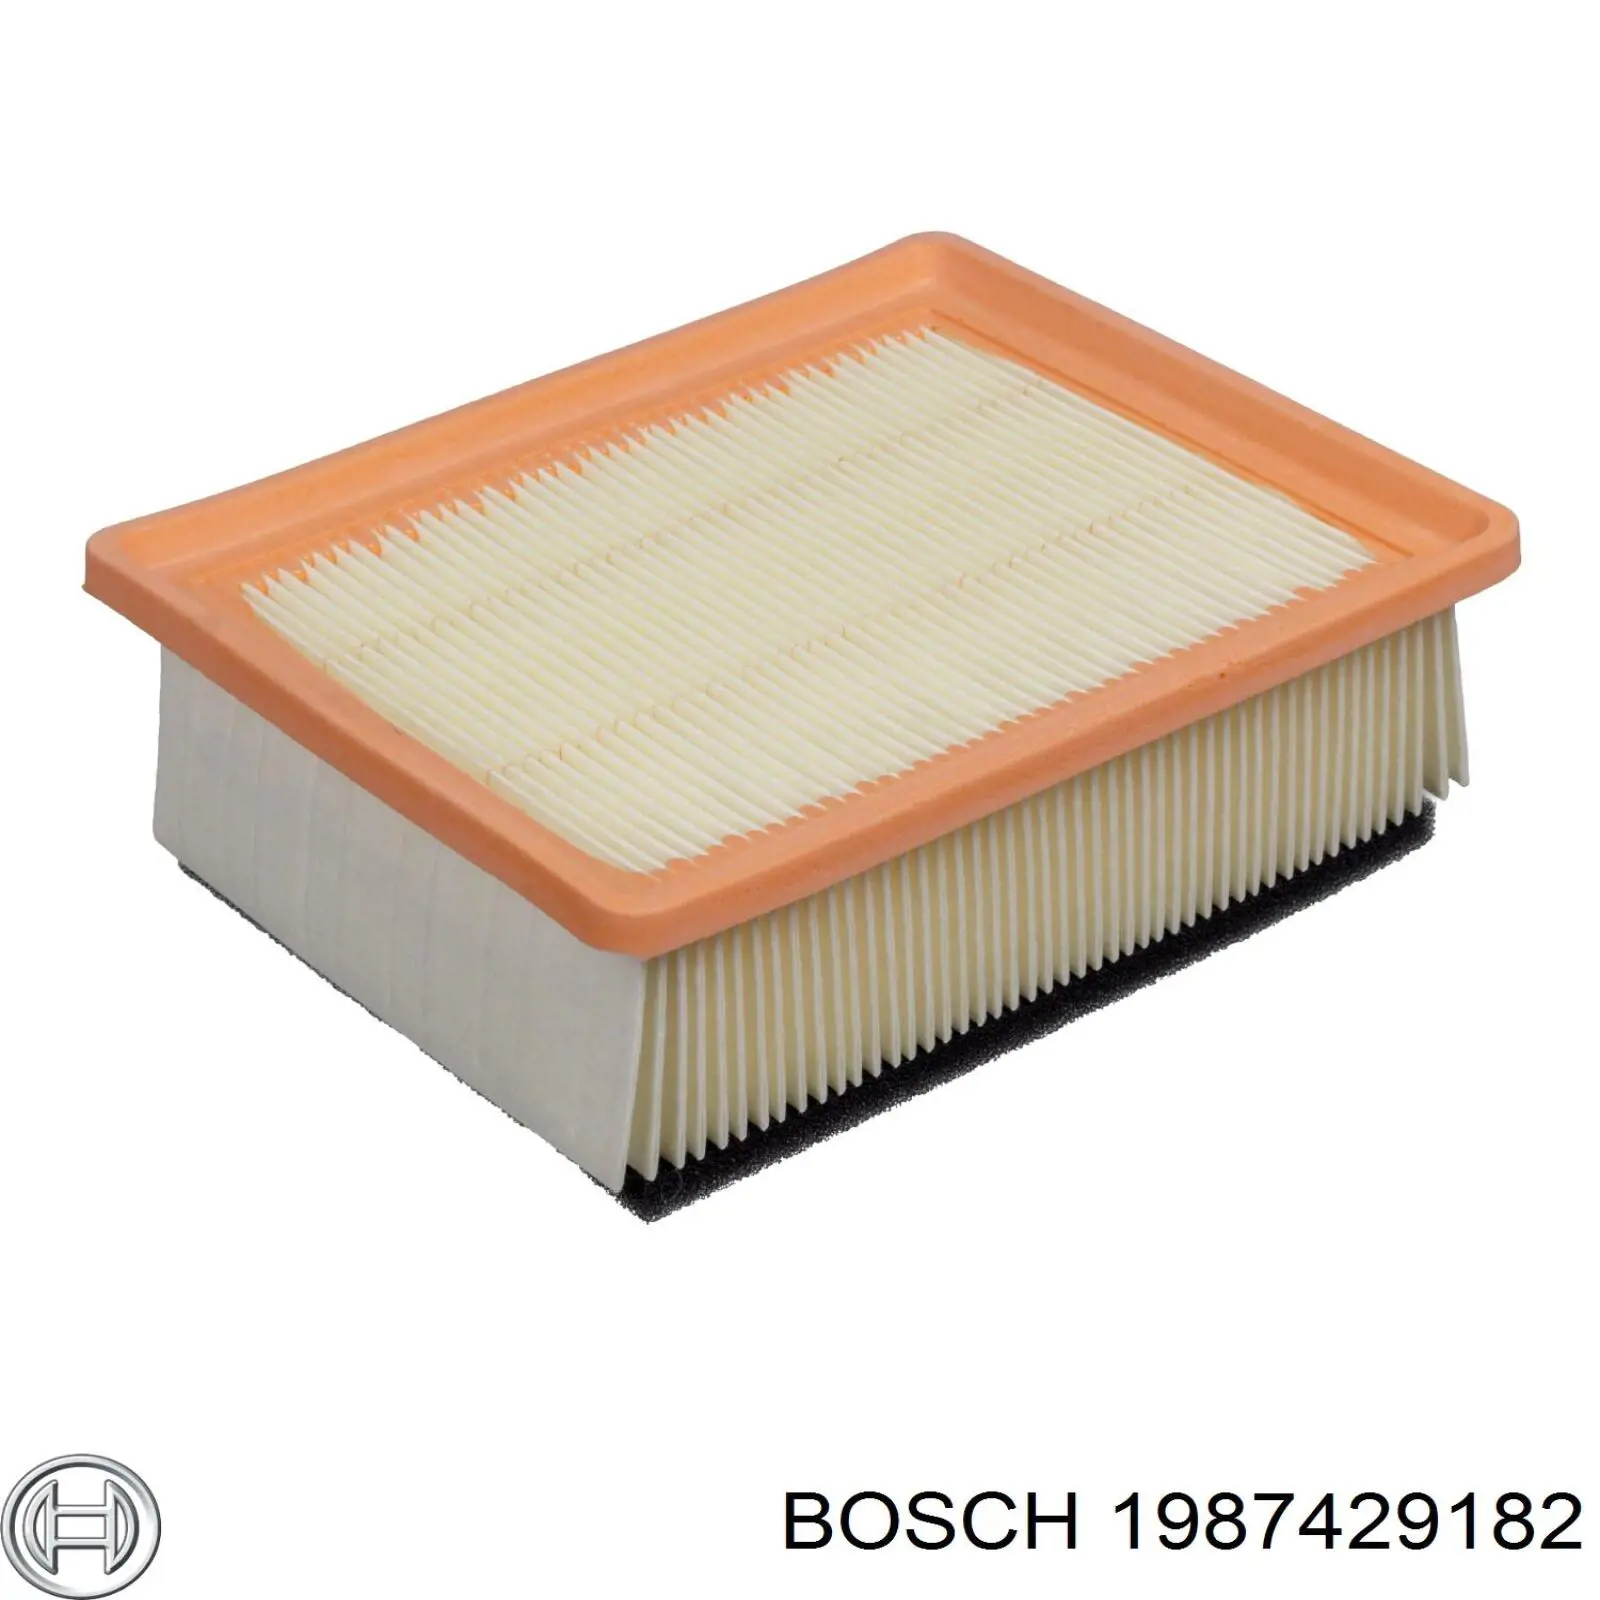 1987429182 Bosch filtro de aire